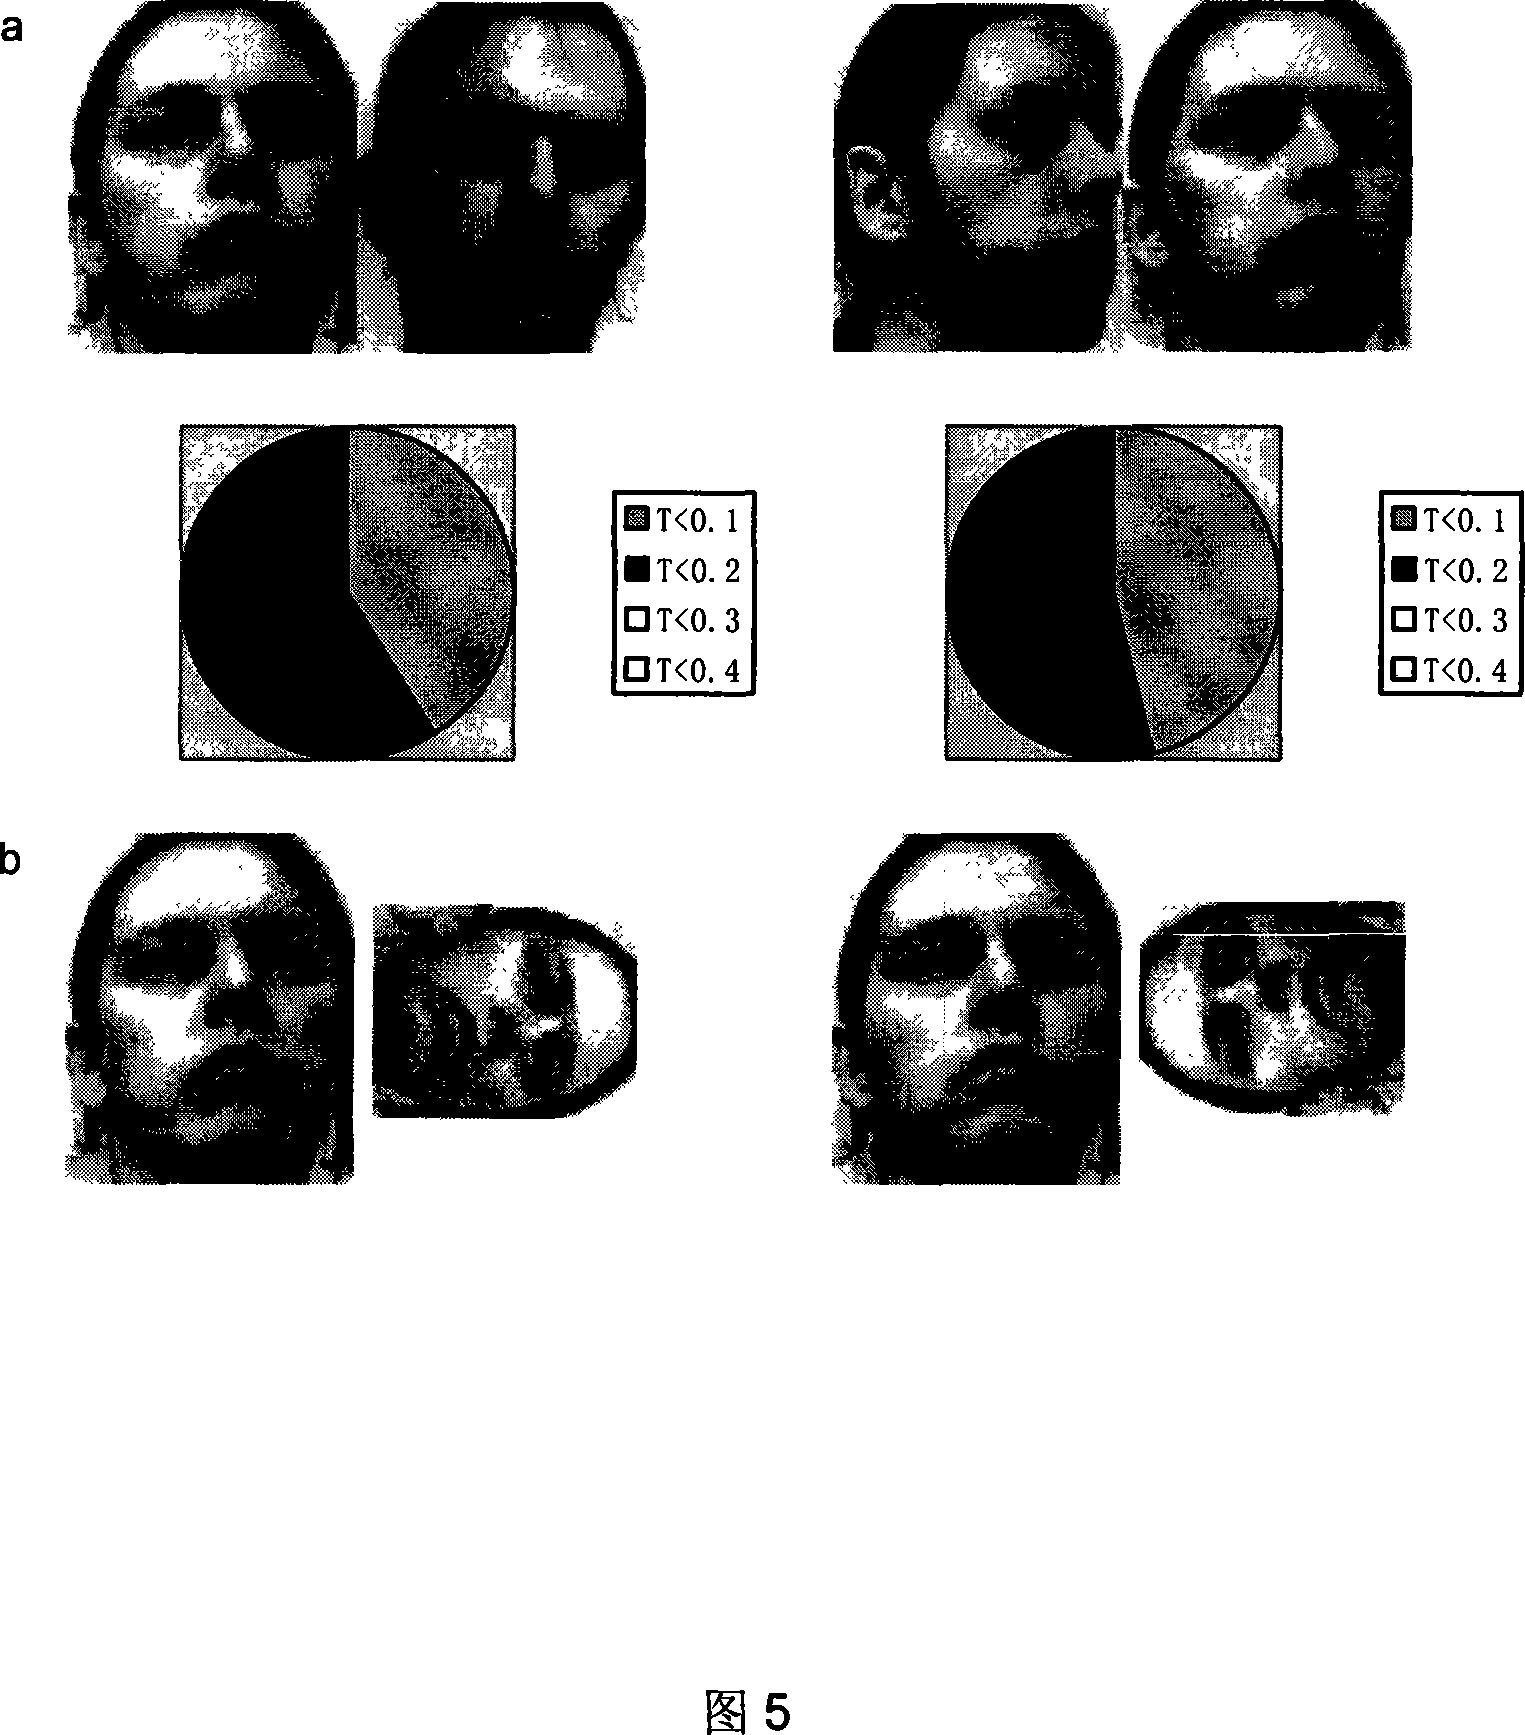 Face shape matching method based on Shape Context